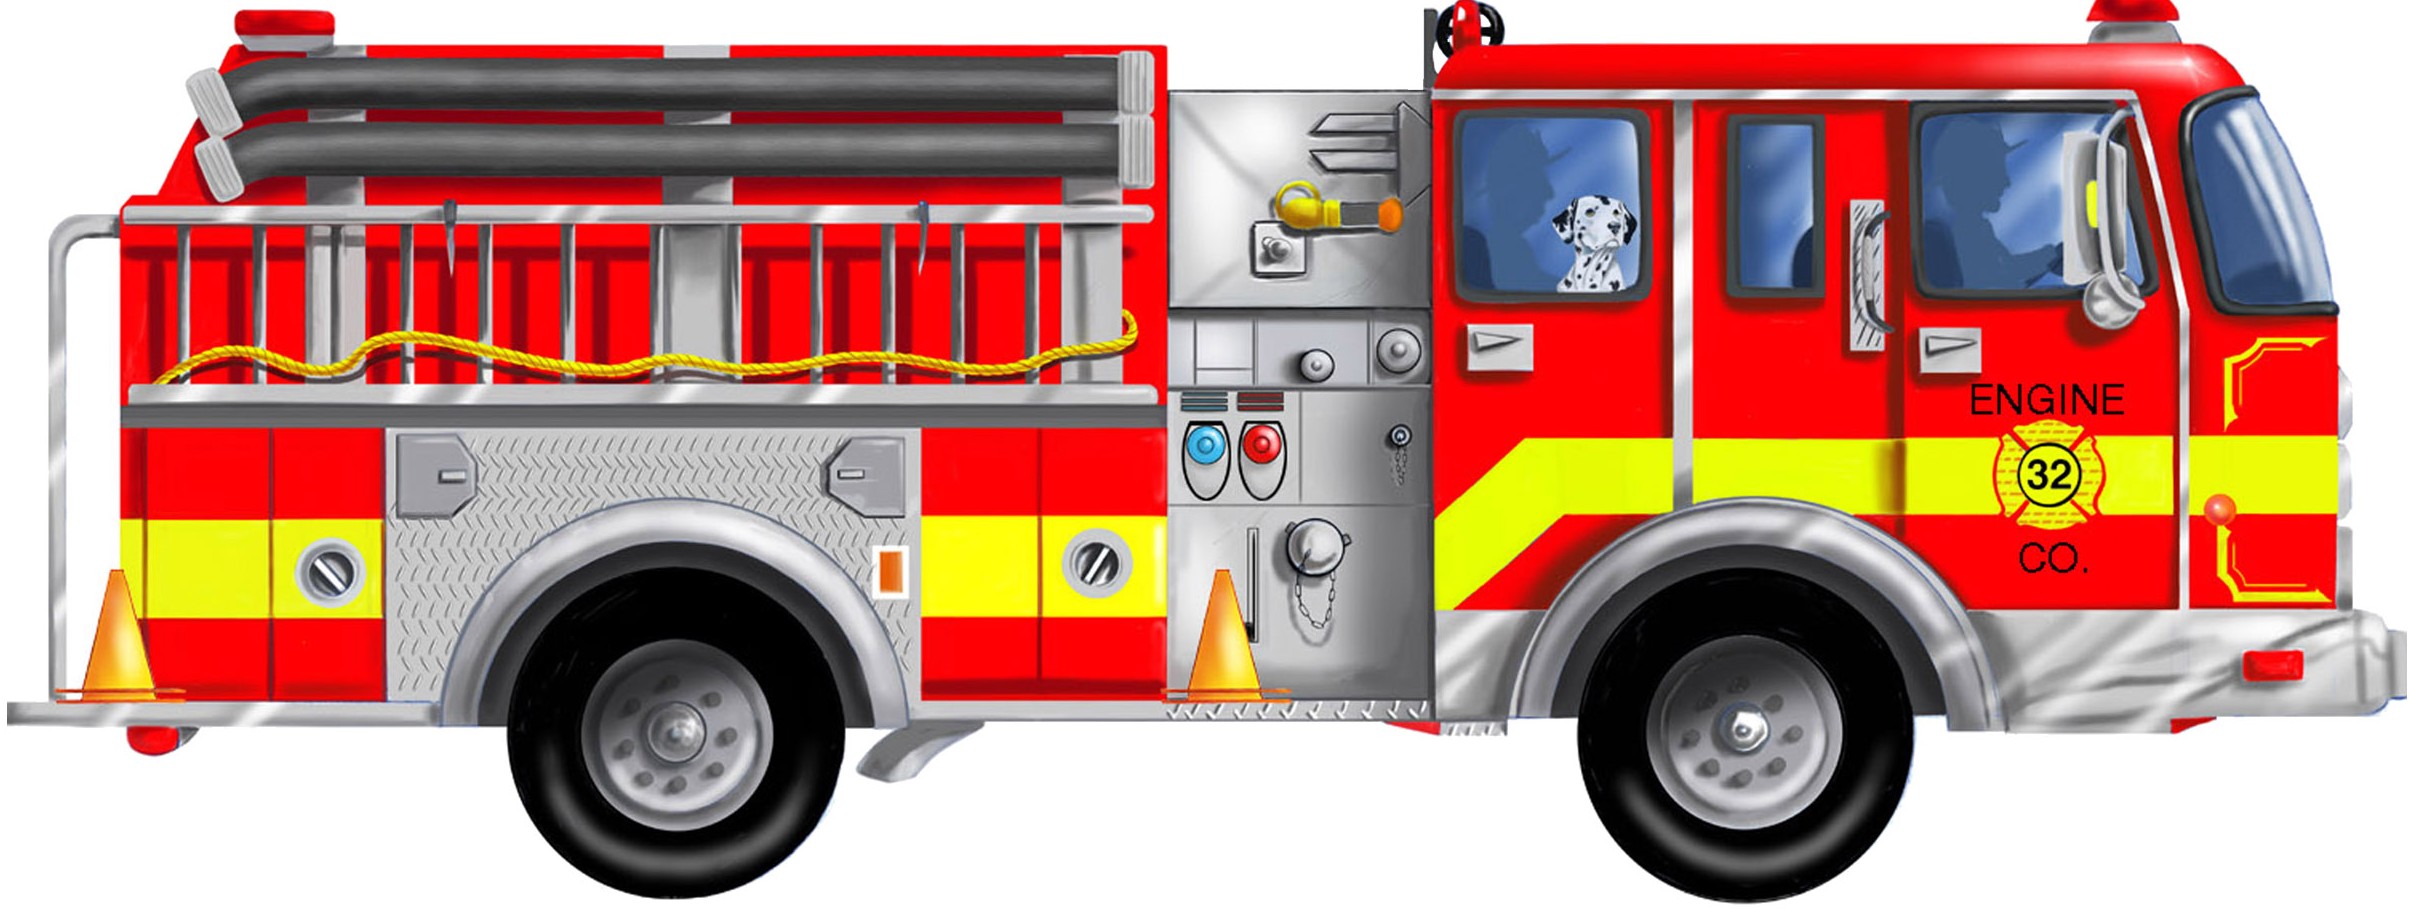 Fire truck firetruck clipart  - Fire Truck Clipart